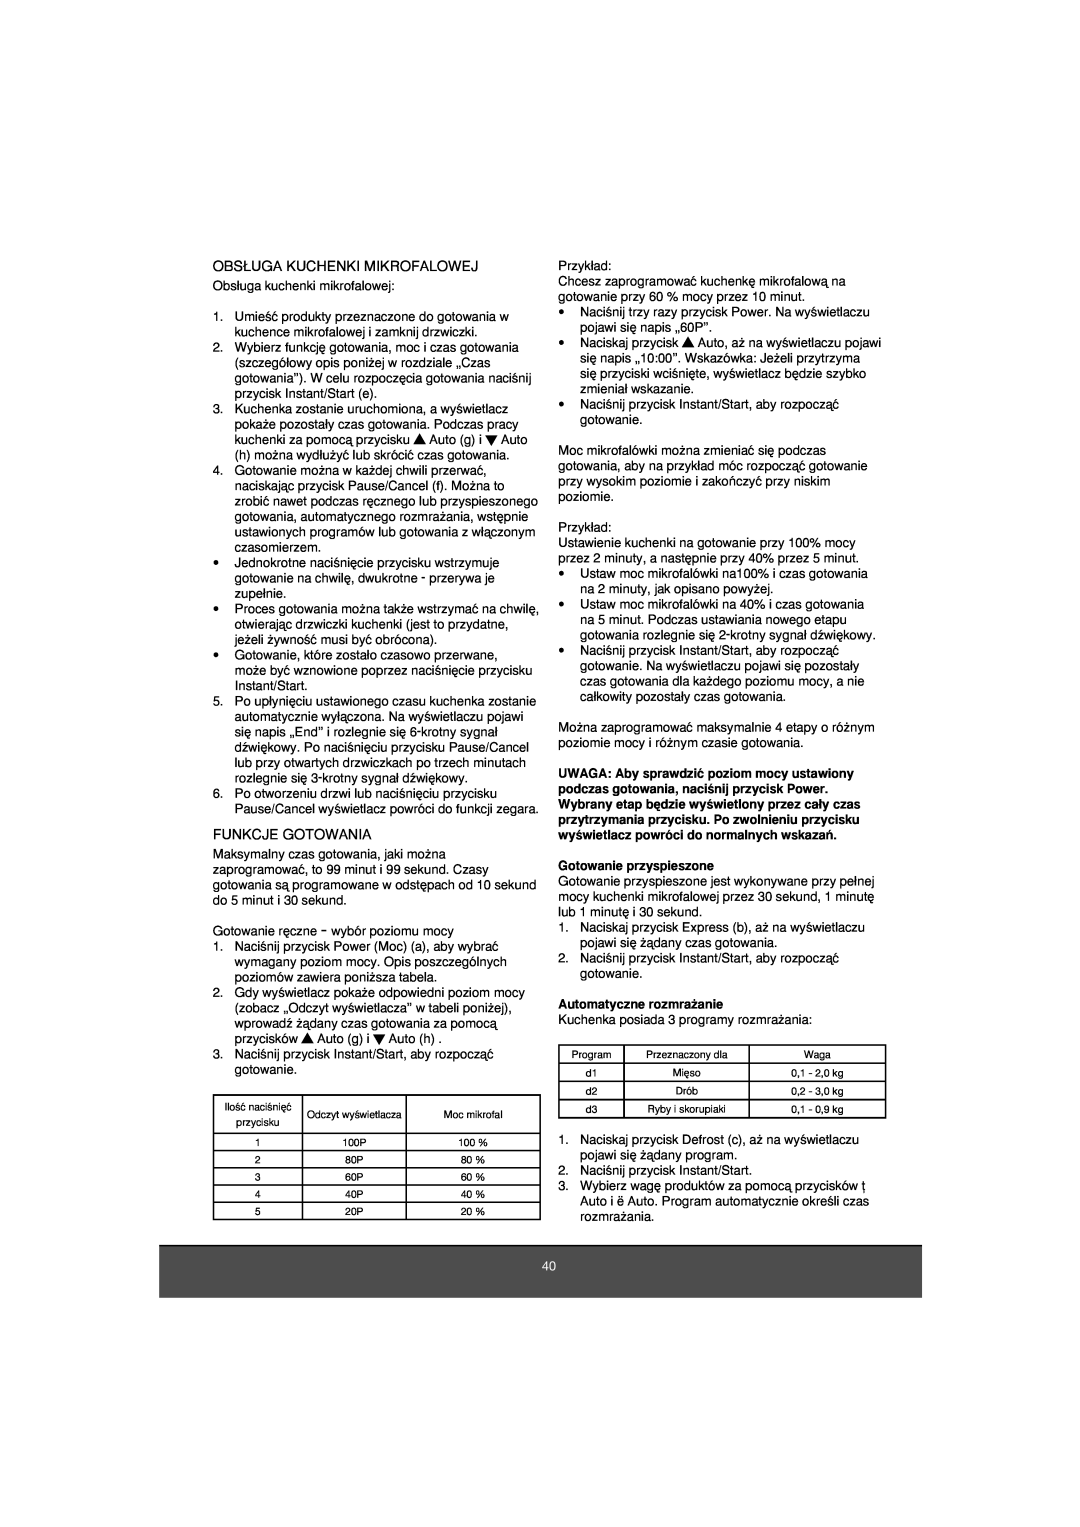 Melissa 653-081 manual Obs¸Uga Kuchenki Mikrofalowej, Funkcje Gotowania, Gotowanie przyspieszone, Automatyczne rozmra˝anie 